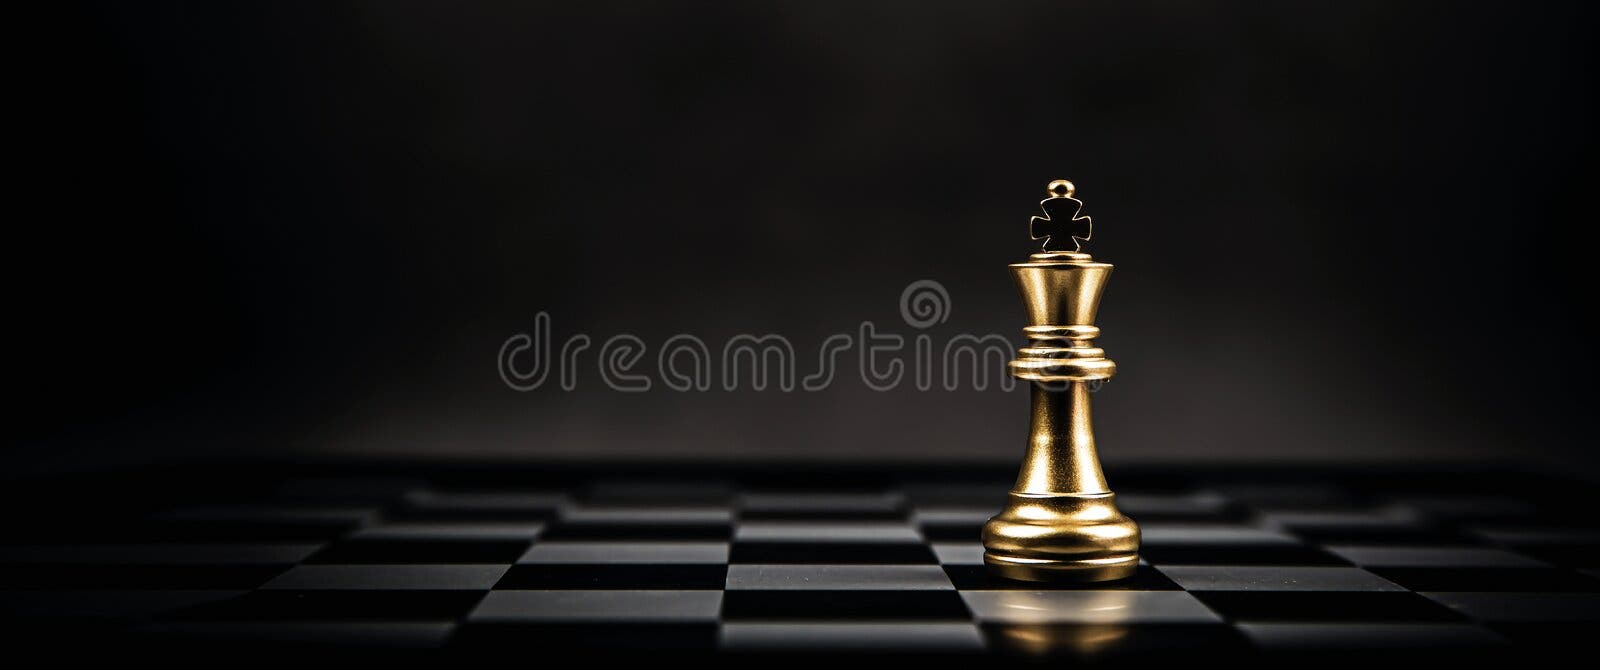 encontro de xadrez de rei dourado com inimigo de xadrez de ouro em